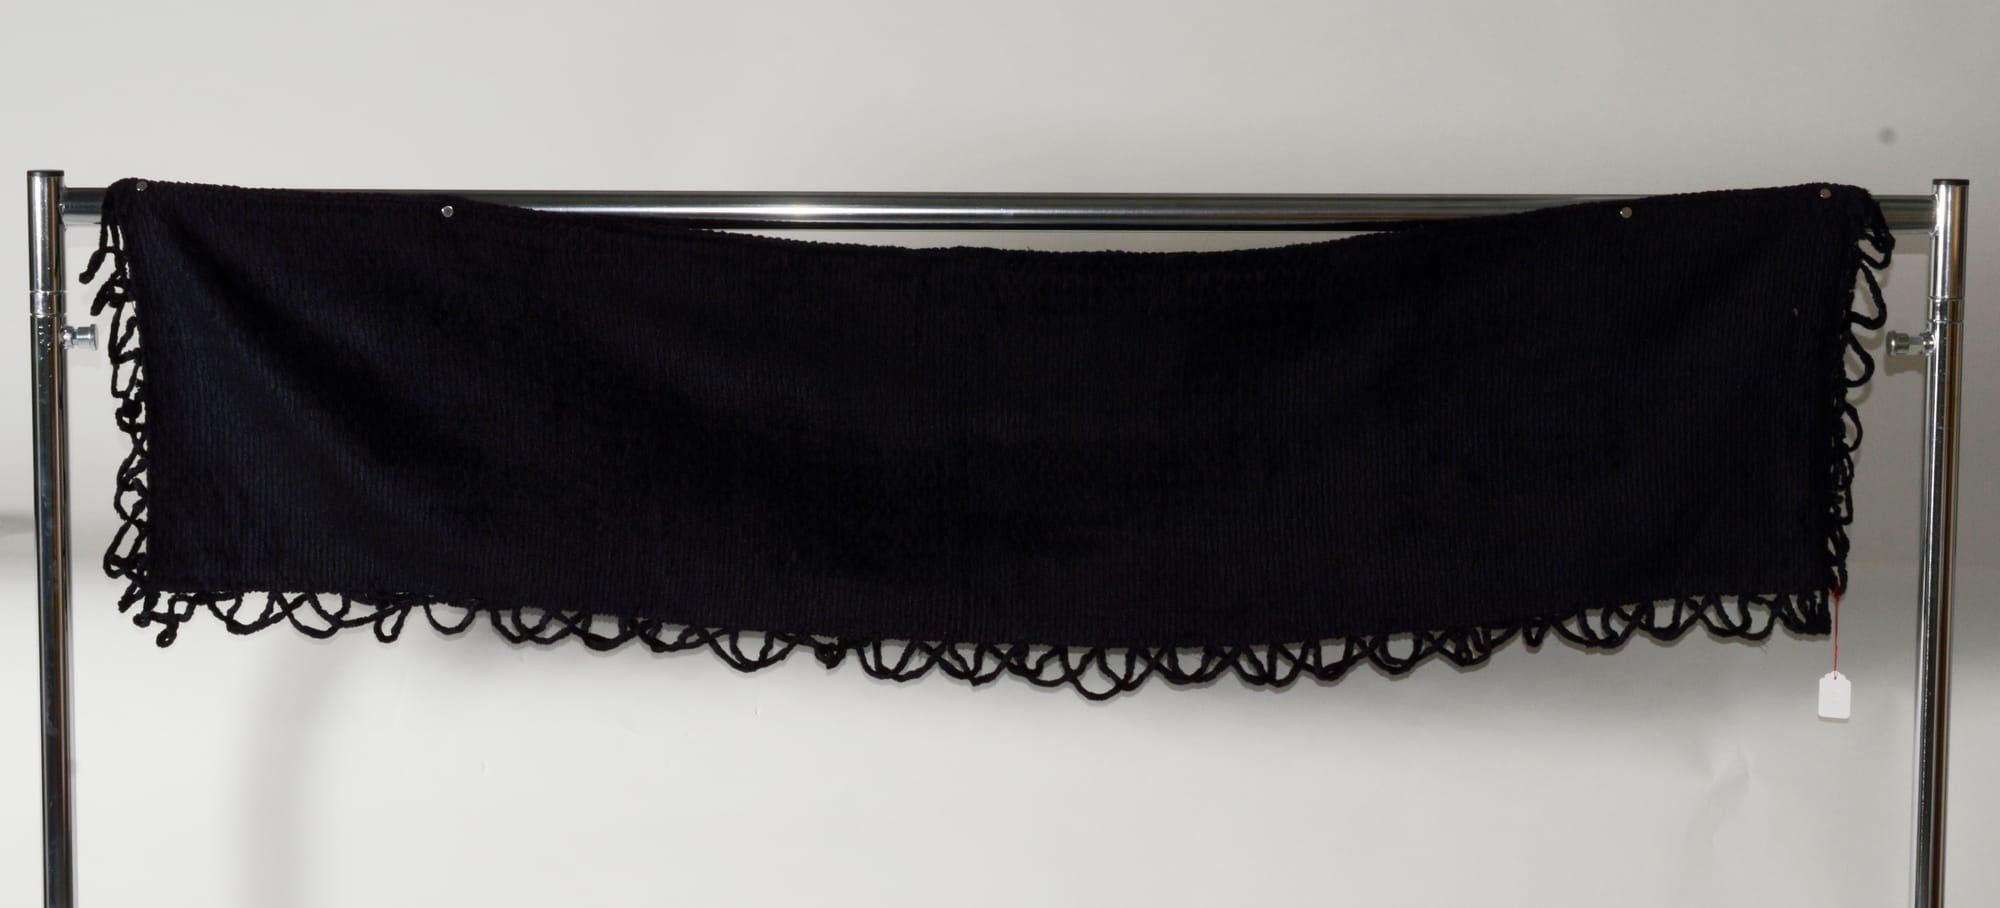 Schultertuch oder Schal aus schwarzem Chenille on den älteren Frauen in der alten Heimat vor 1945 getragen